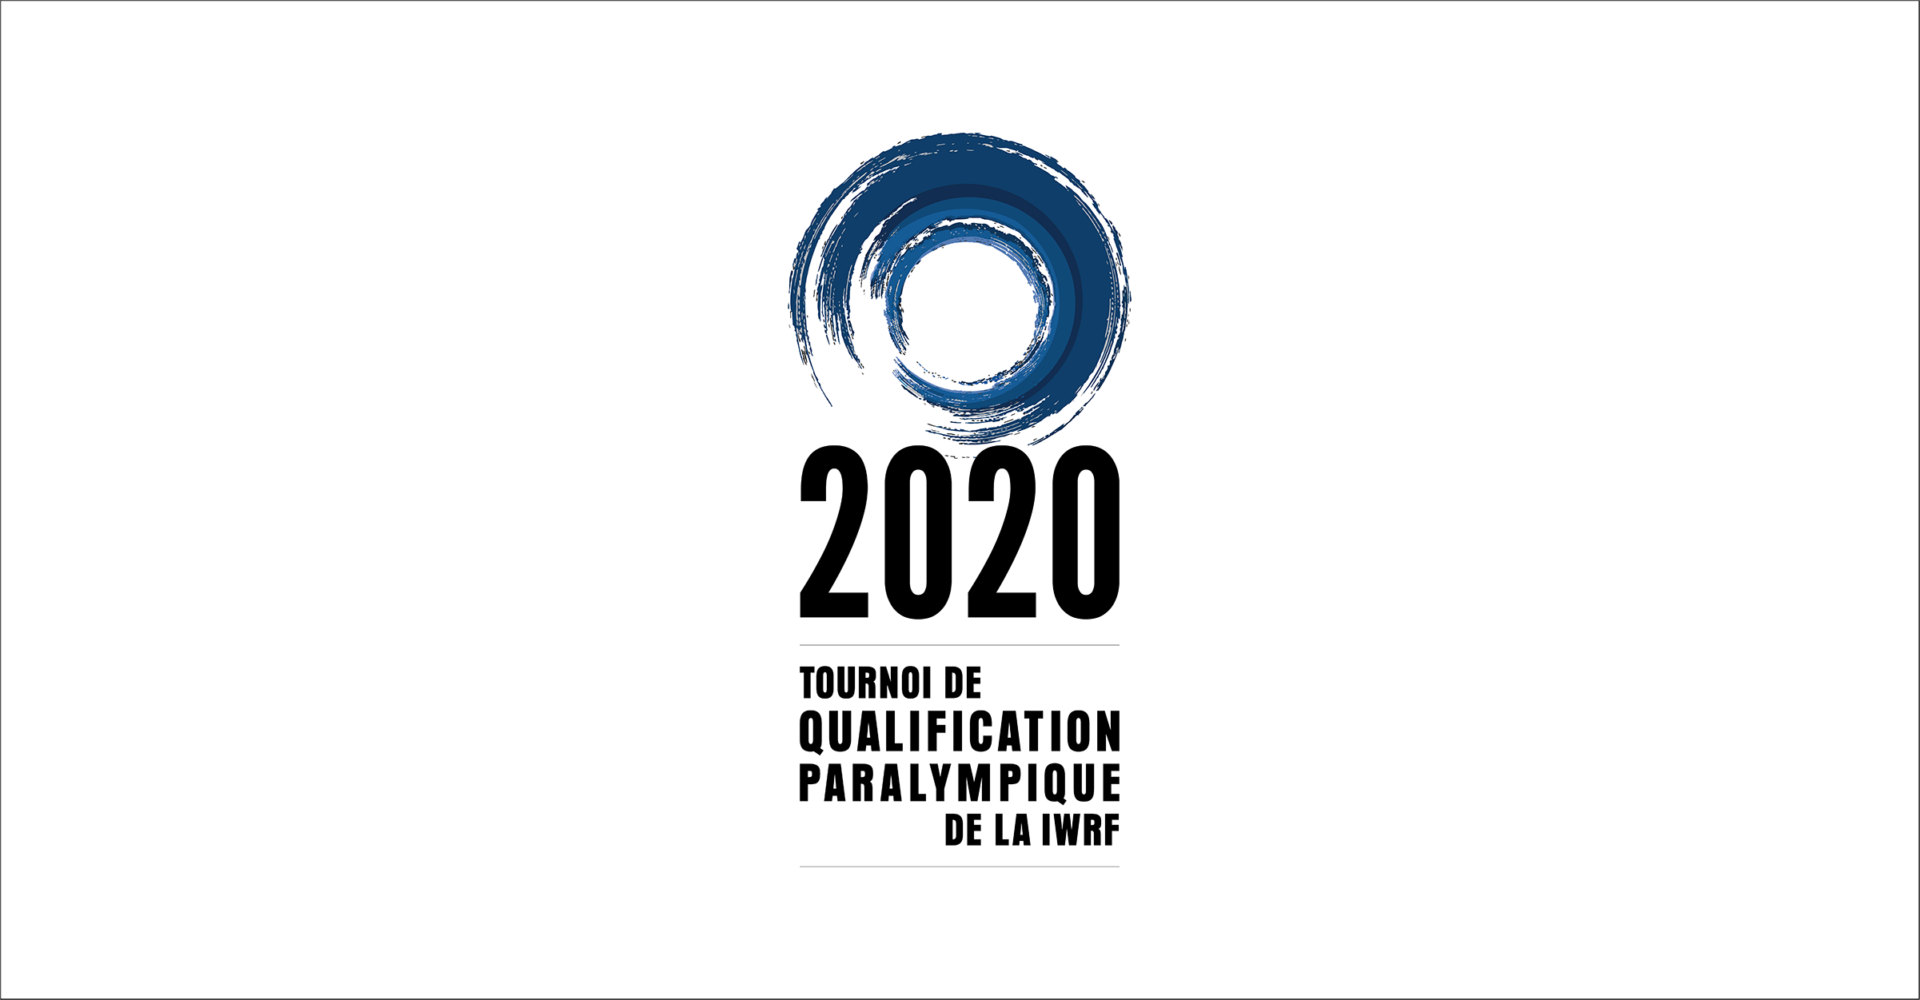 CHANGEMENT DE FORMAT POUR TOURNOI DE QUALIFICATION PARALYMPIQUE DE 2020 DE LA IWRF